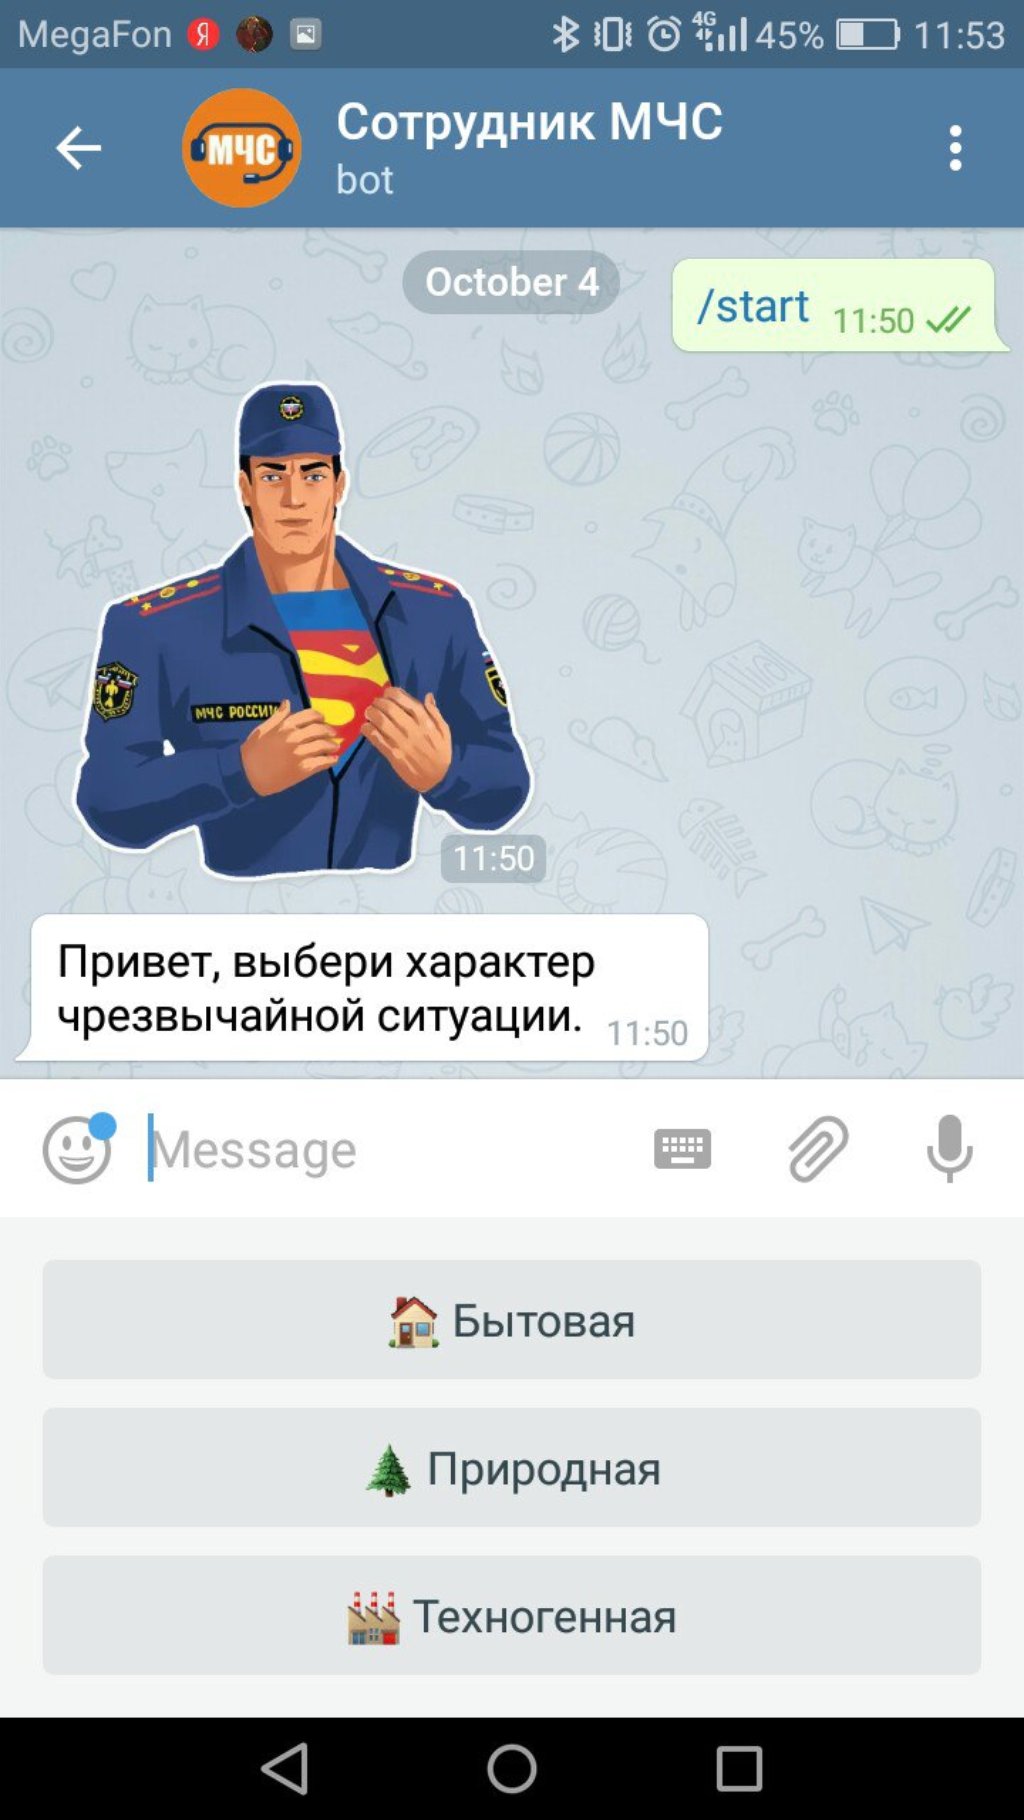 ChatBot Conference RU: V Telegram poyavilsya chat-bot «Sotrudnik MChS» - 1